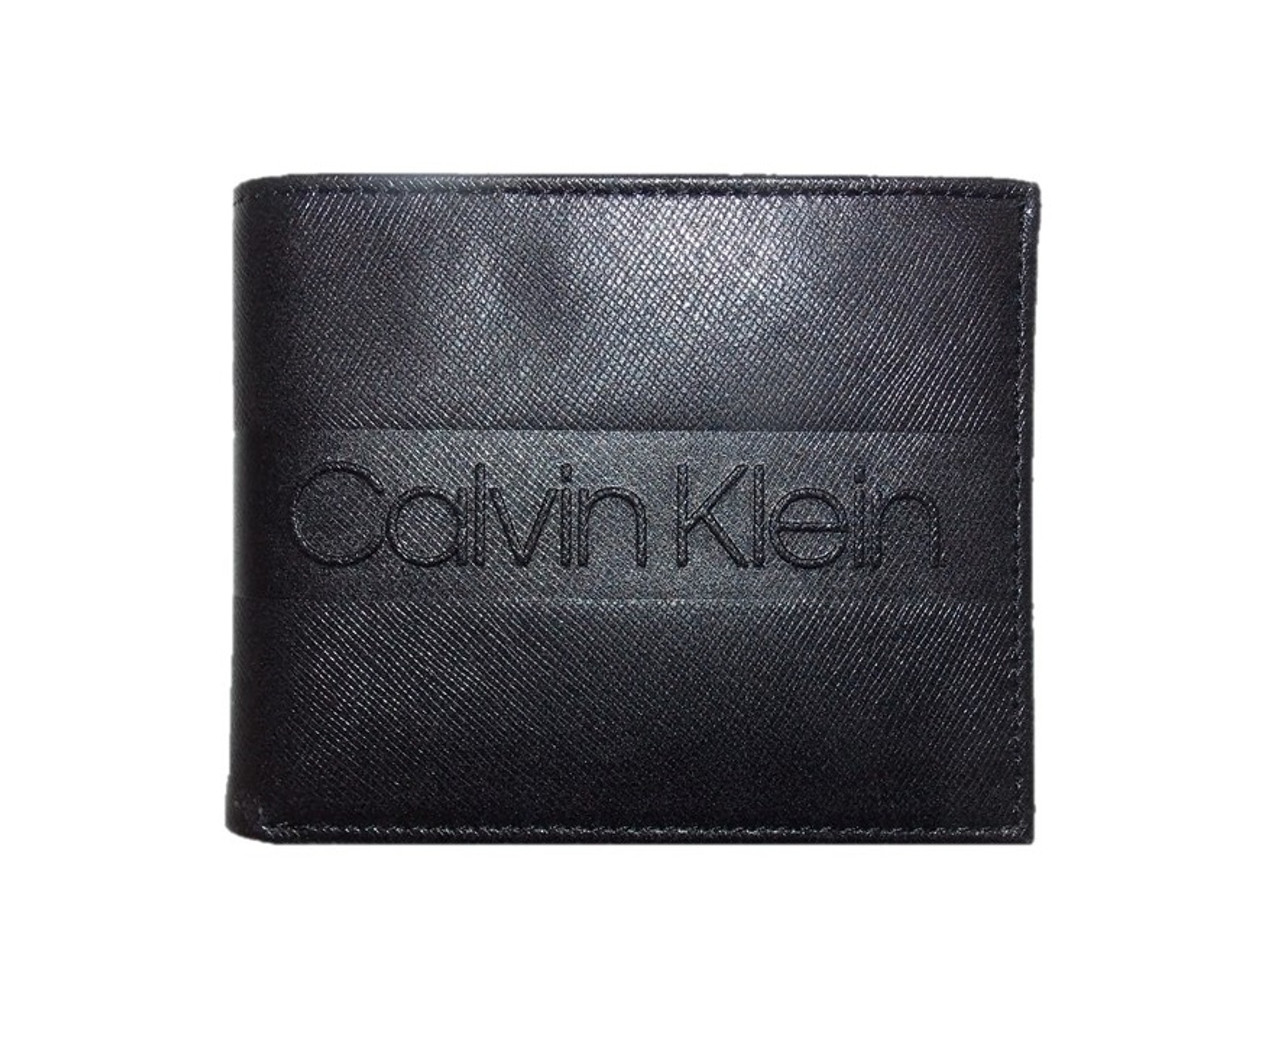 Kan niet lezen of schrijven Kracht raket Calvin Klein Embossed Bifold Black Leather Wallet For Men